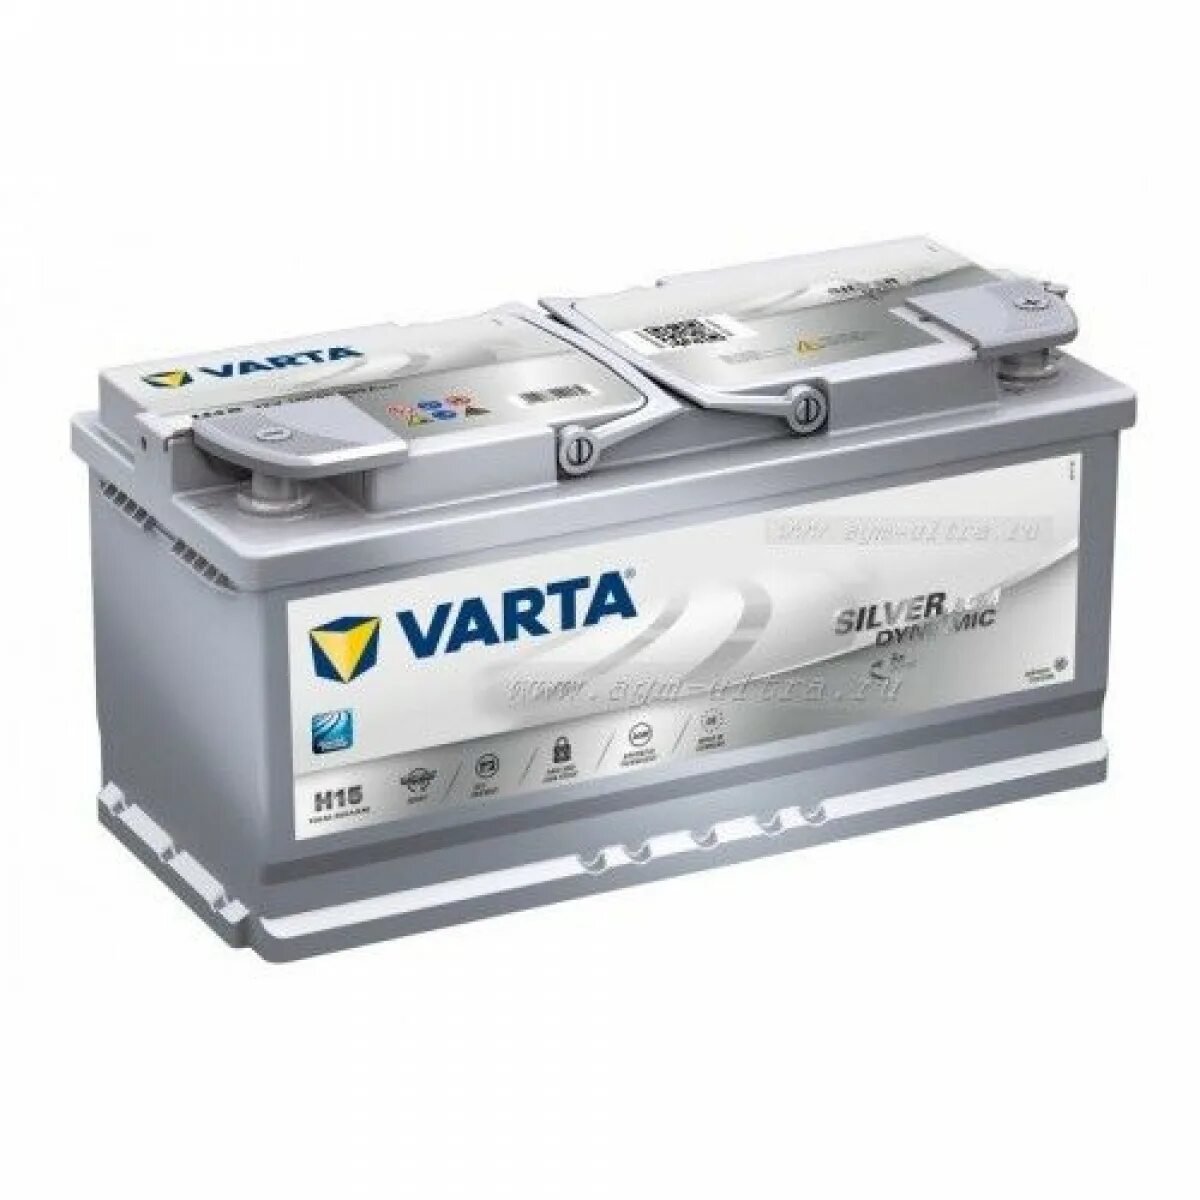 Varta start-stop Plus 6ct-80 r+. 595901085 Varta AGM. Varta Silver Dynamic g14. Varta g14 595 901 085. Аккумулятор автомобильный легковой